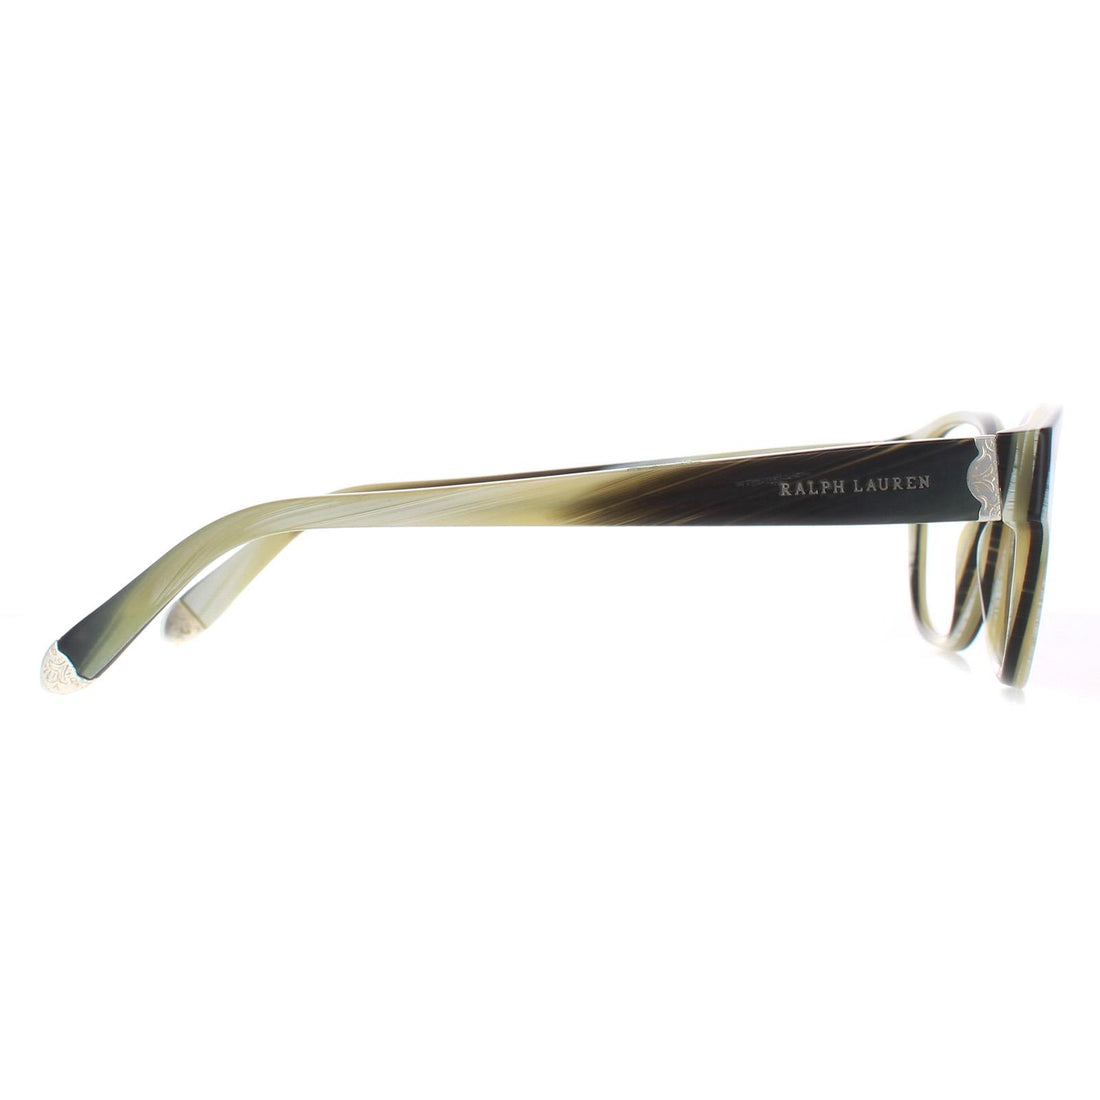 Ralph Lauren RL 6112 Glasses Frames